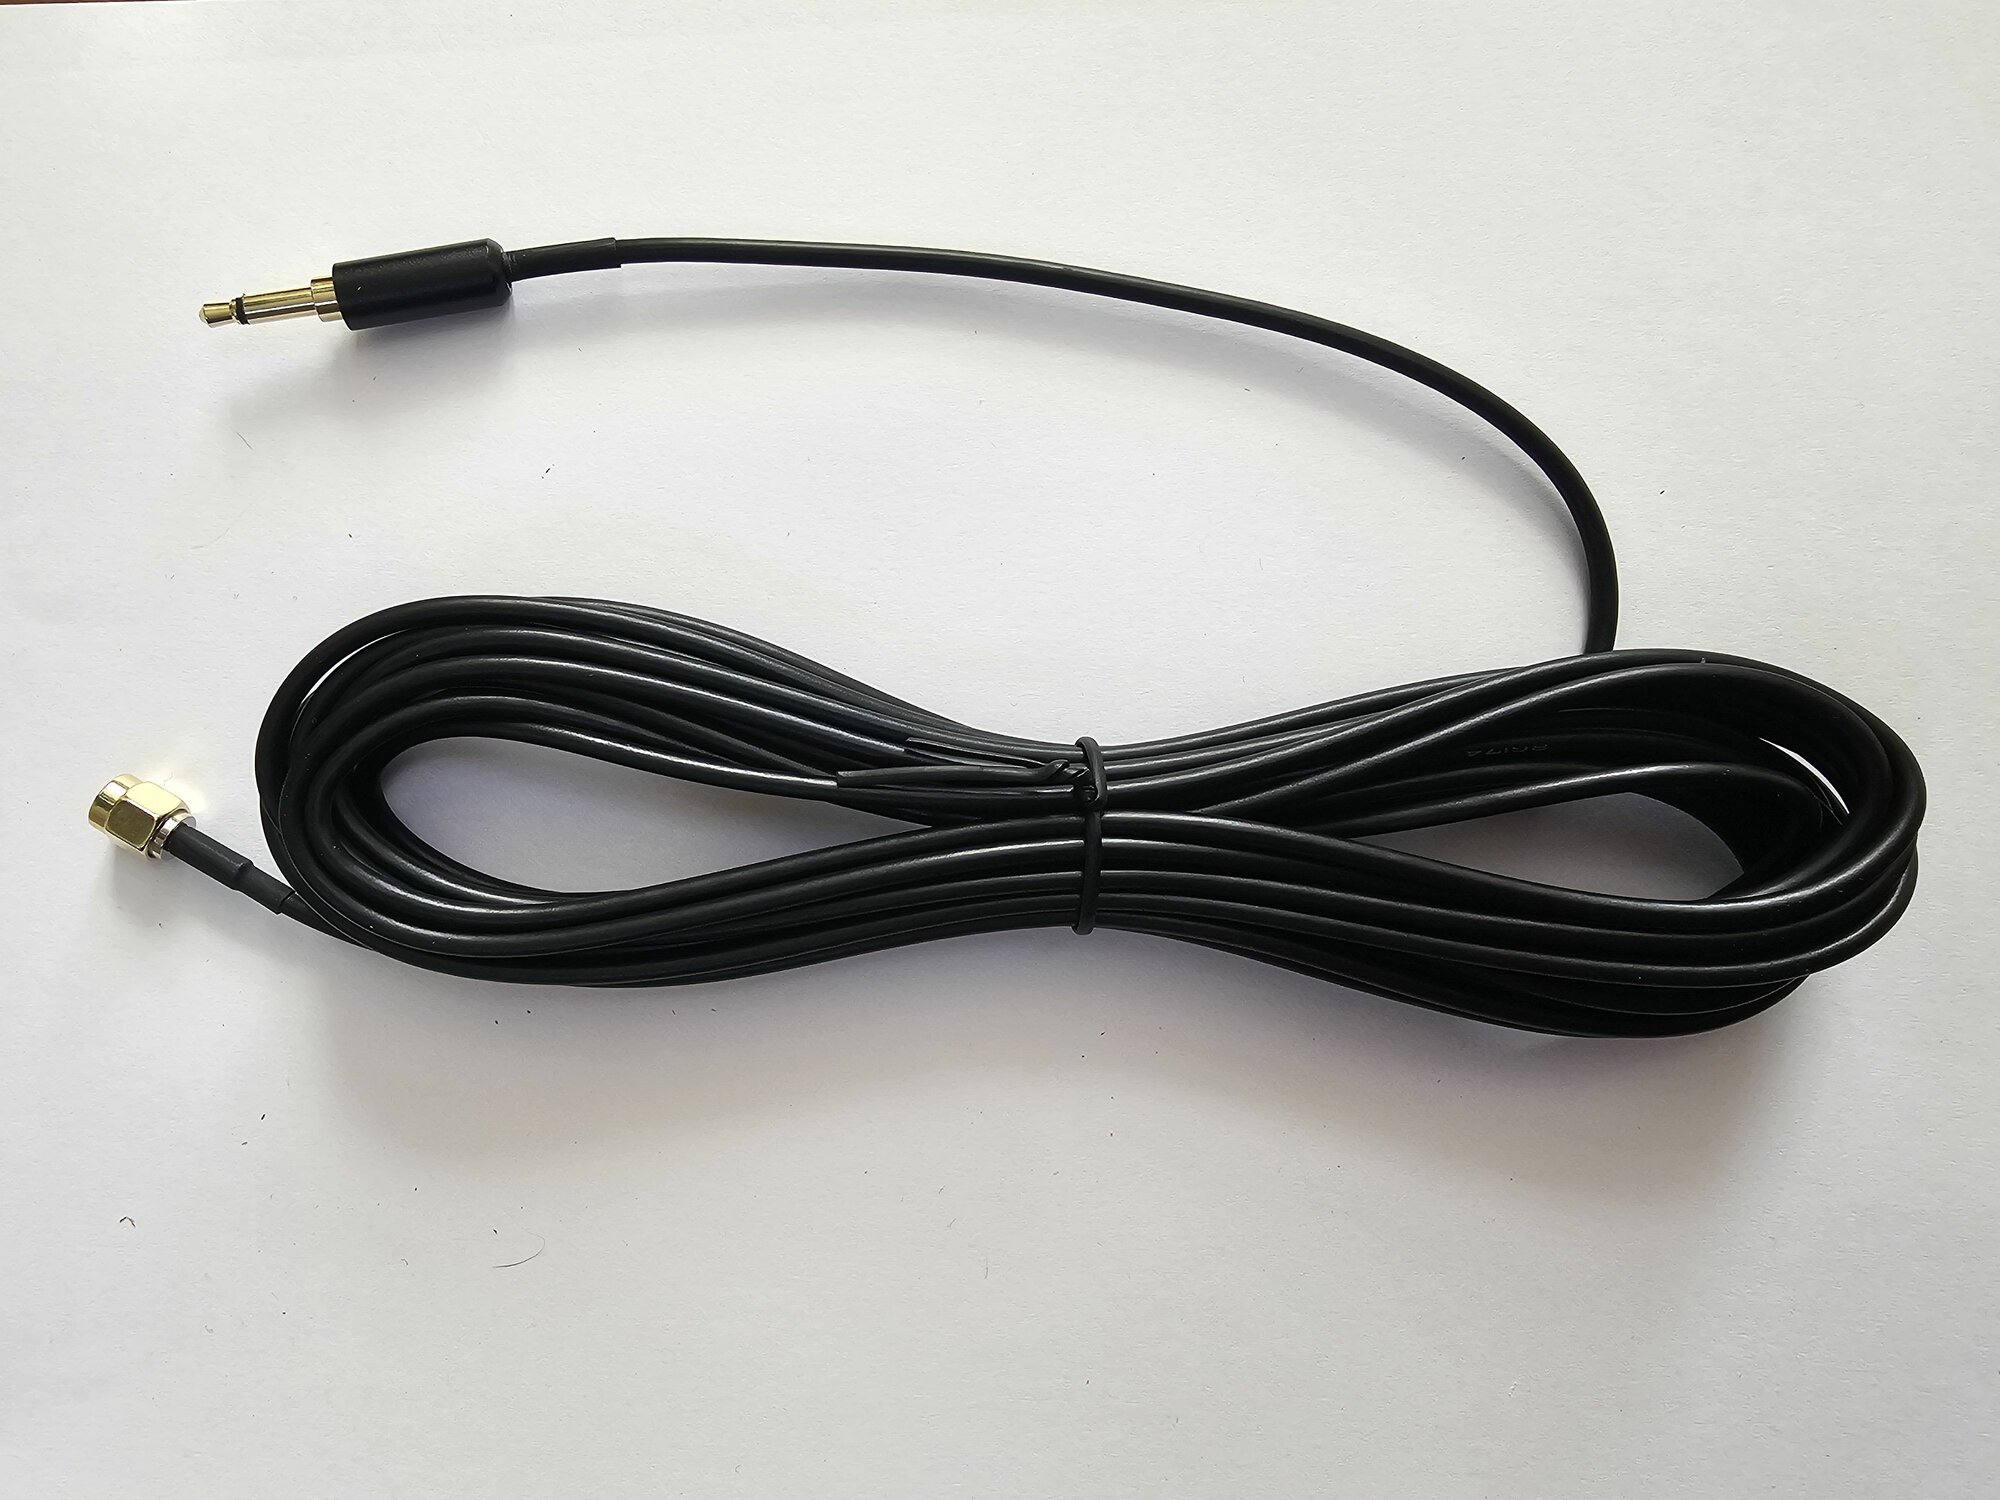 Коаксиальный кабель RG174 разъёмы SMA-3.5mm 5,5метров 50ом